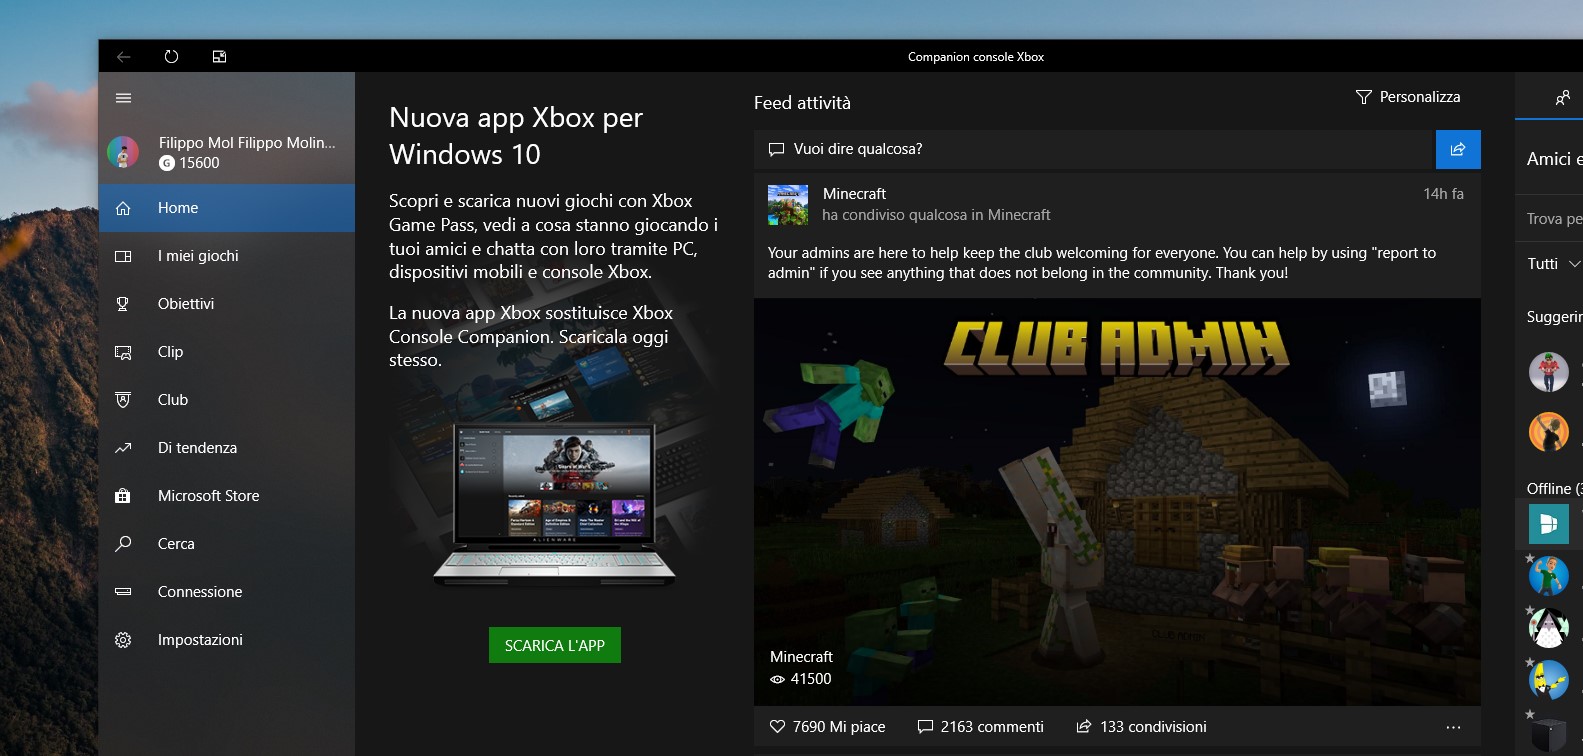 Companion console Xbox banner per il download della nuova app Xbox per Windows 10